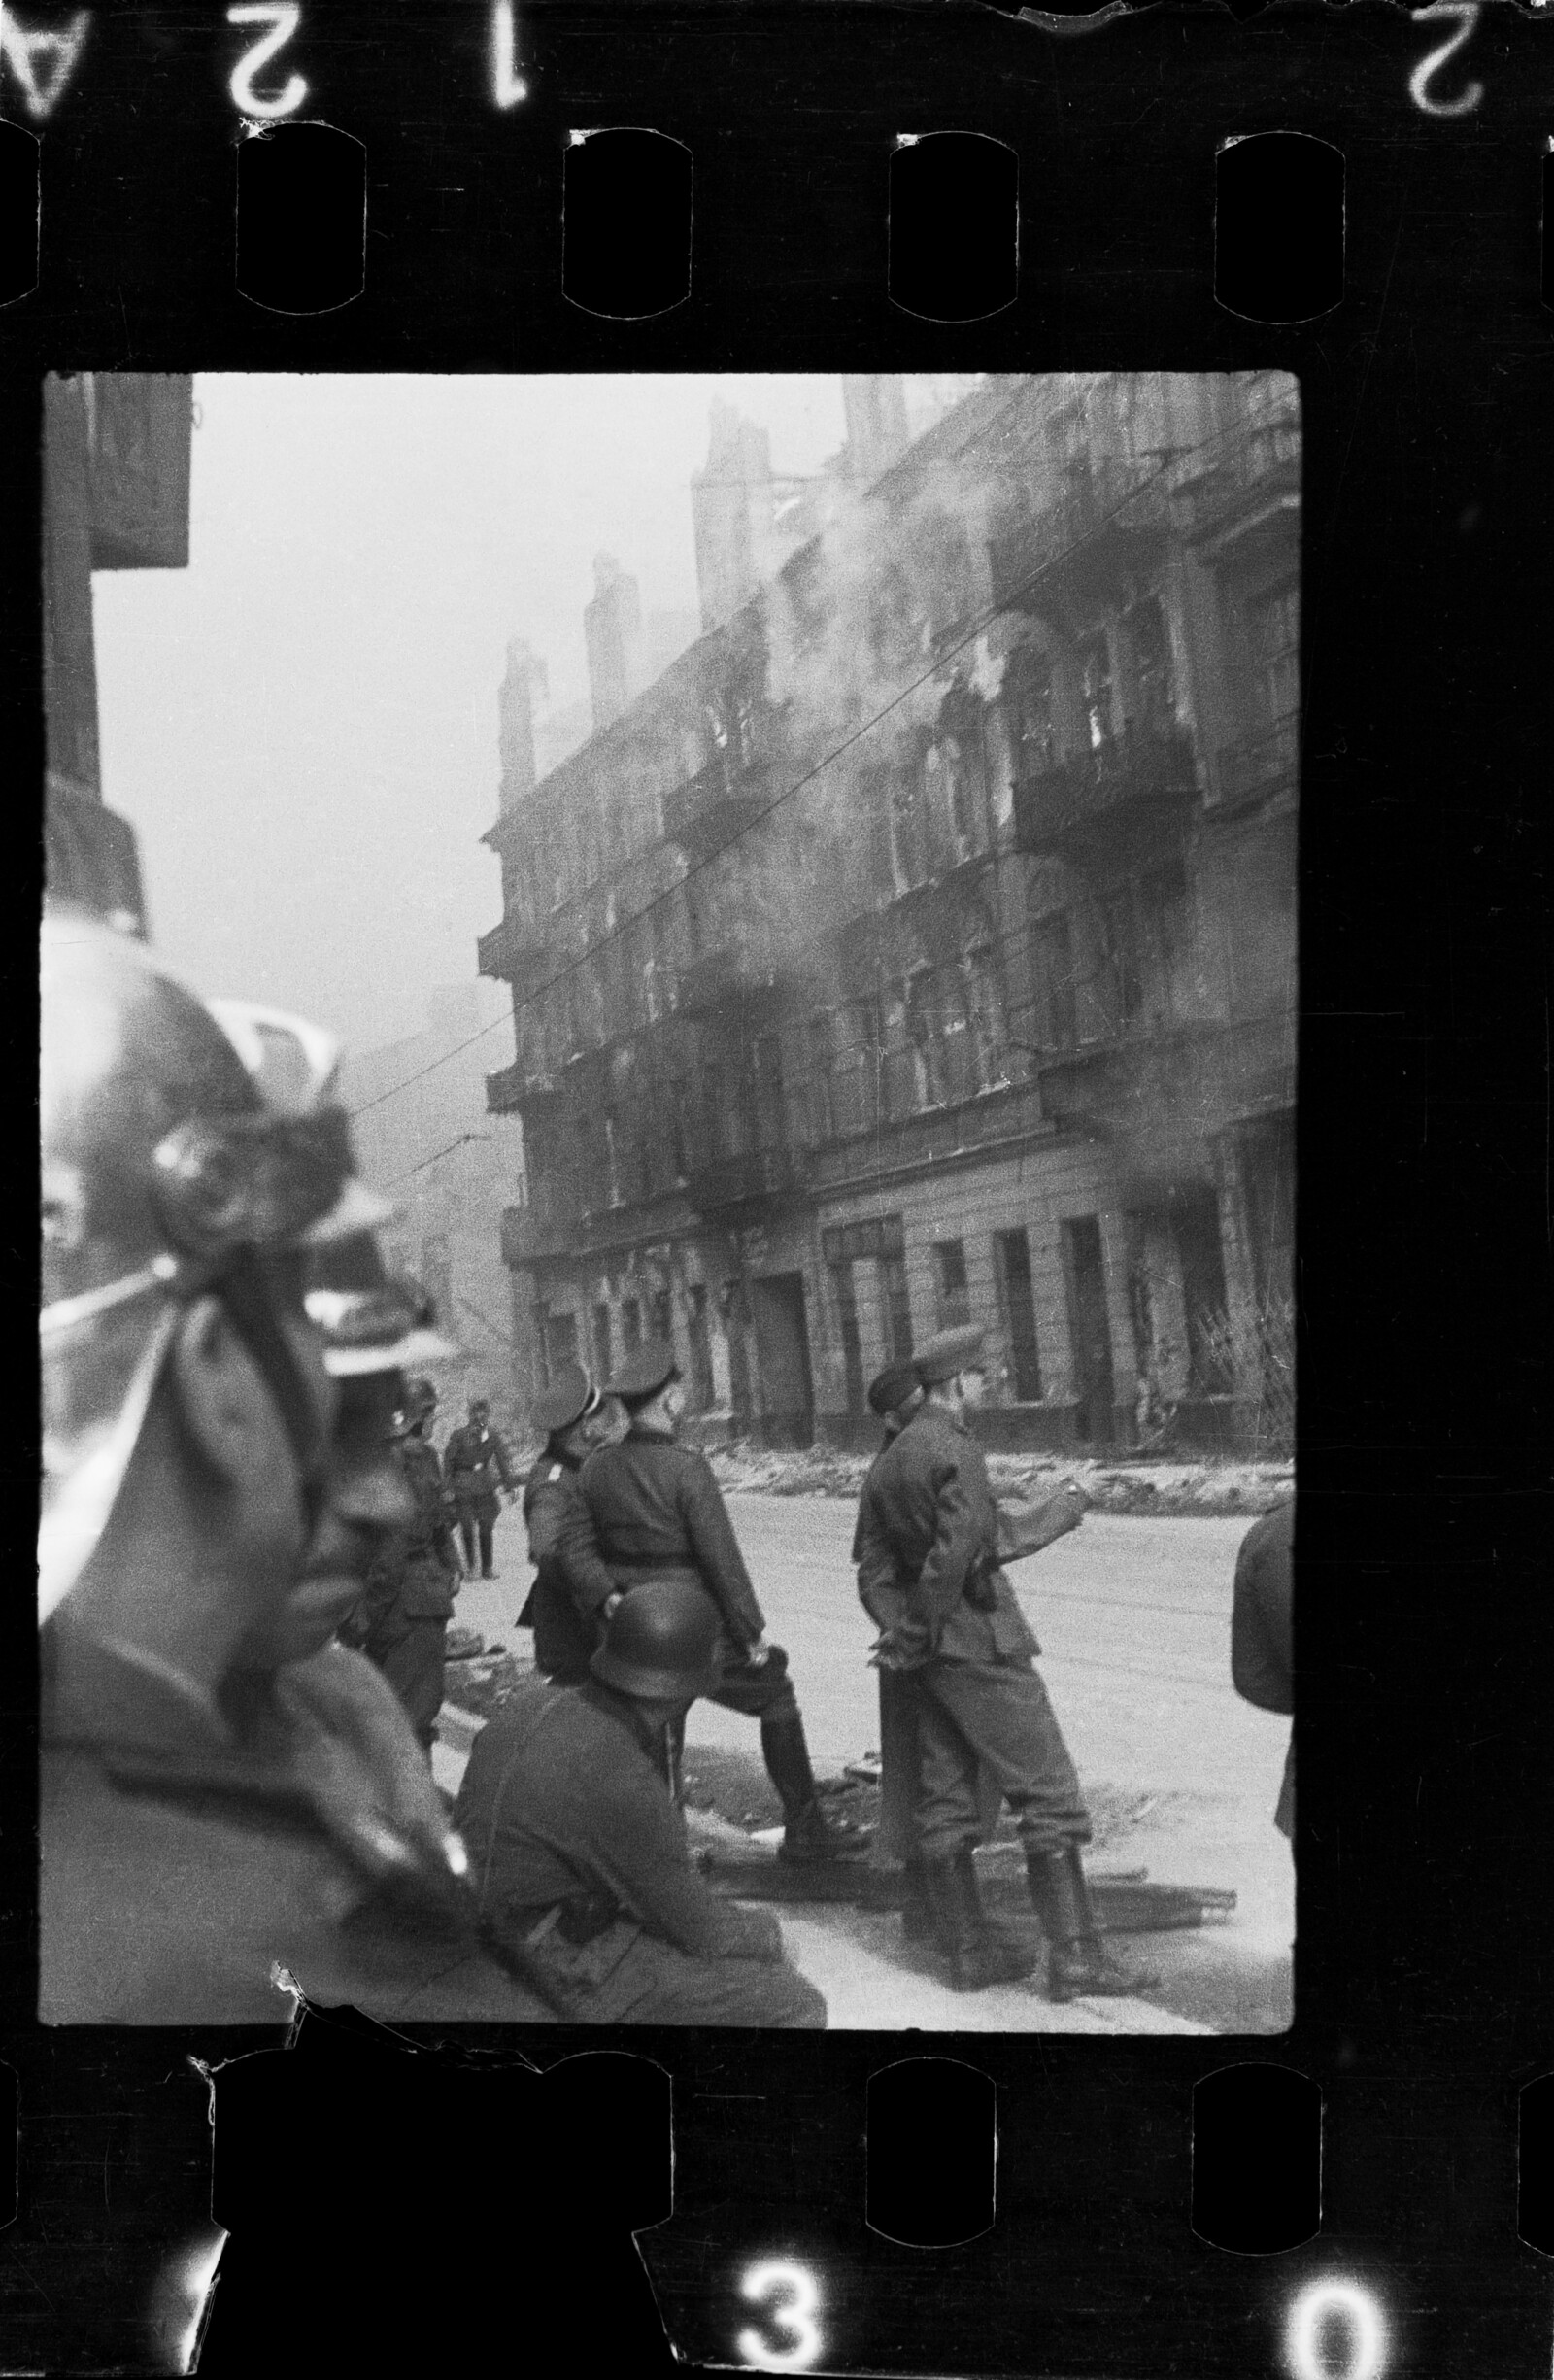 תמונה ממרד גטו ורשה שנחשפה כעבור 80 שנה על ידי כבאי פולני (צילום: Z. L. Grzywaczewski/Archiwum rodzinne / Muzeum POLIN, newsweek)